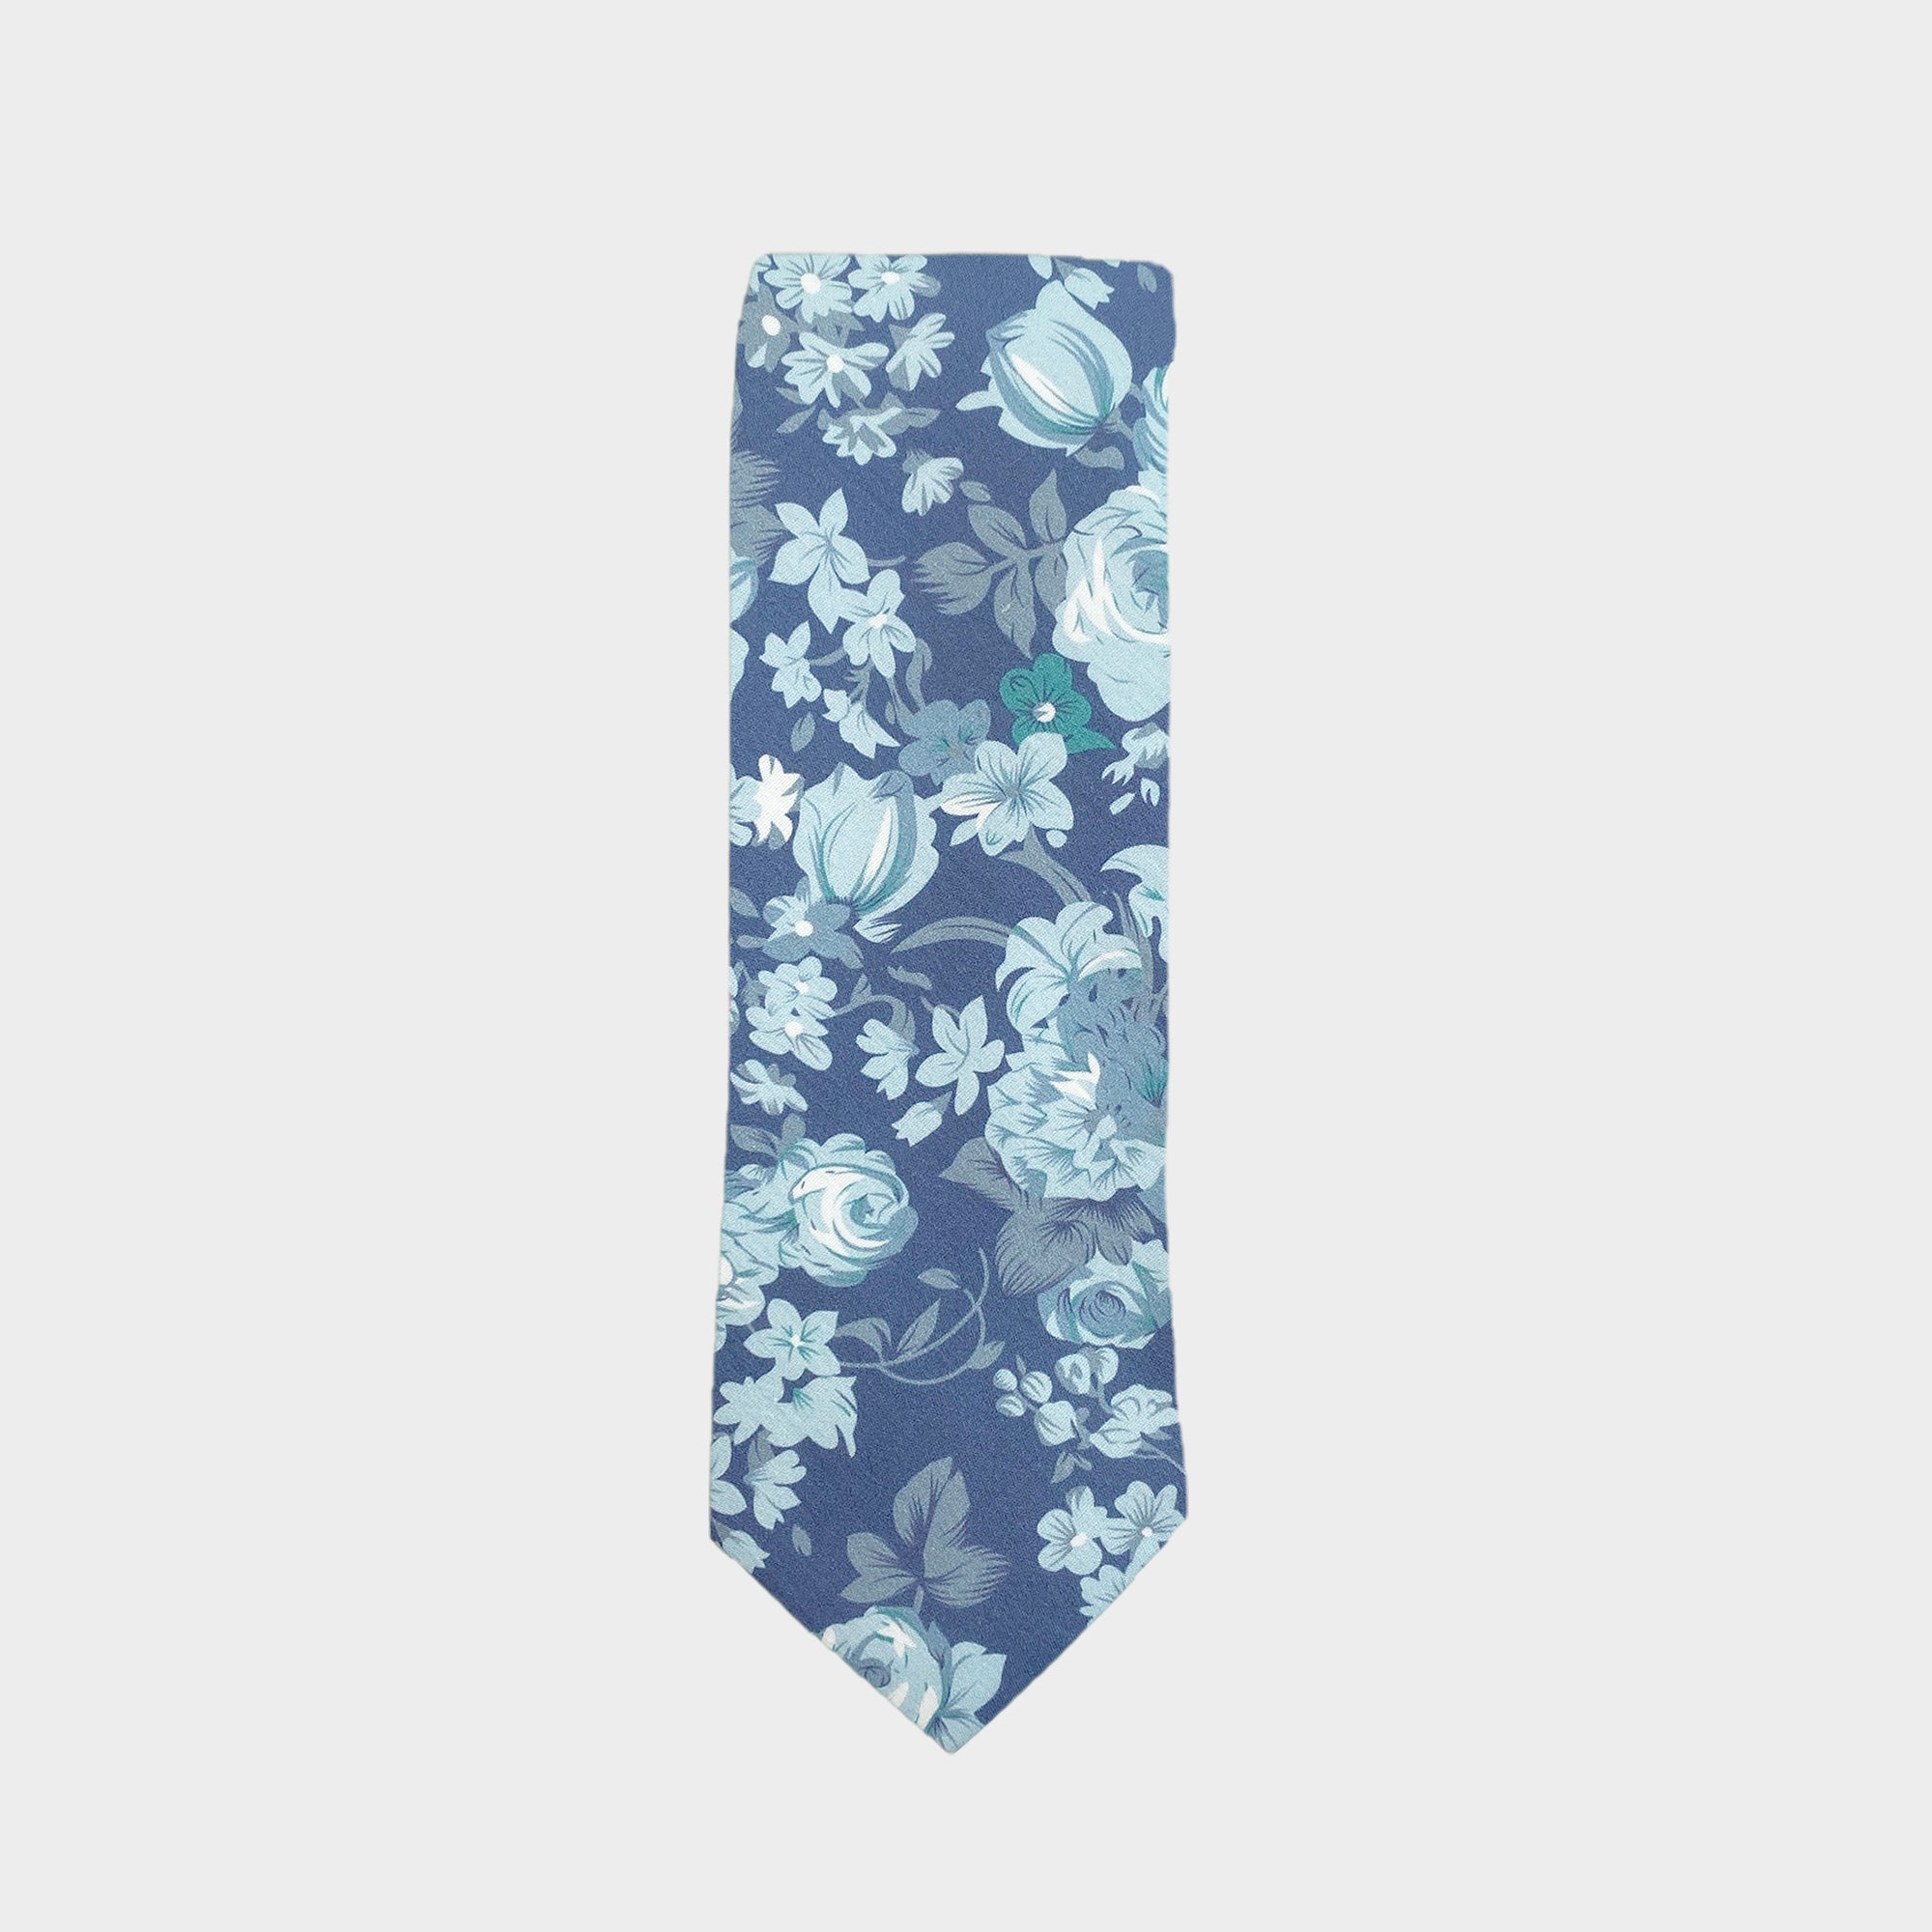 ASHER - Men's Tie